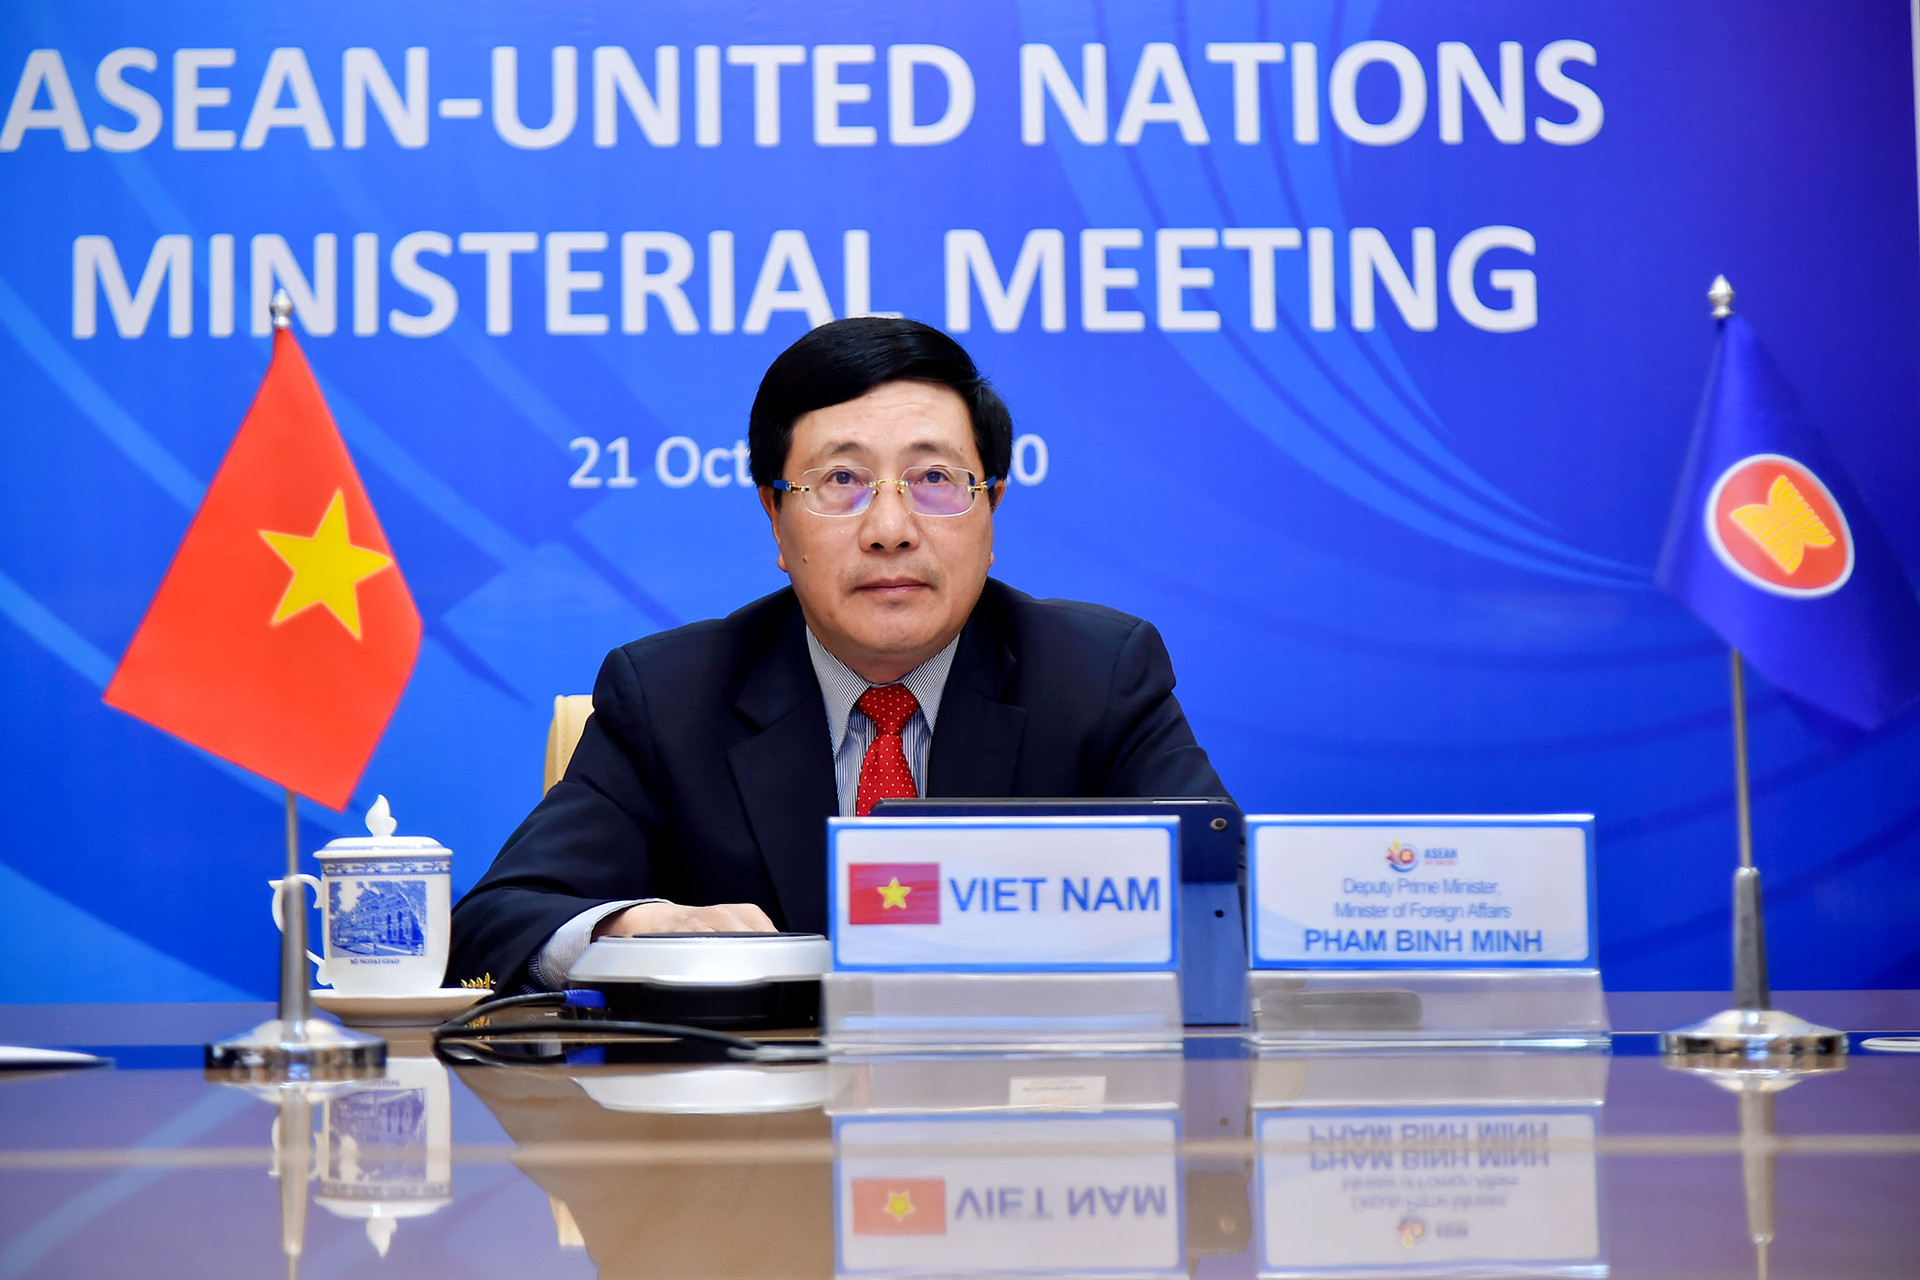 Hội nghị Bộ trưởng Ngoại giao ASEAN-LHQ:  Việt Nam là tiêu biểu về năng lực dẫn dắt, điều phối ASEAN  - Ảnh 1.